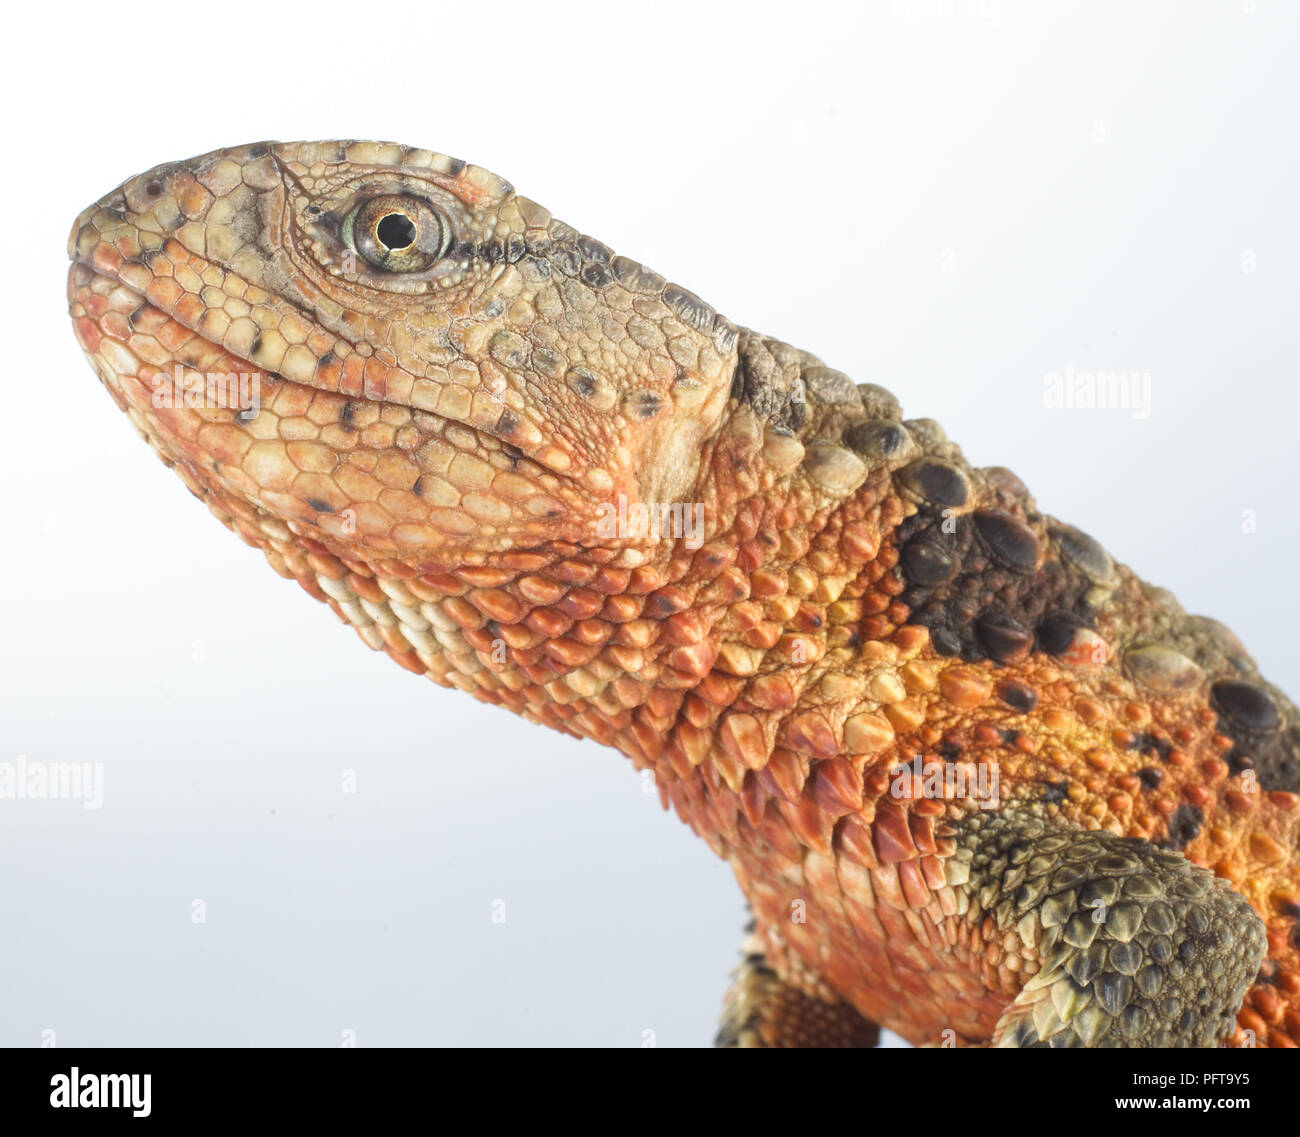 Coccodrillo cinese lizard (Shinisaurus crocodilurus). Dettaglio della testa Foto Stock